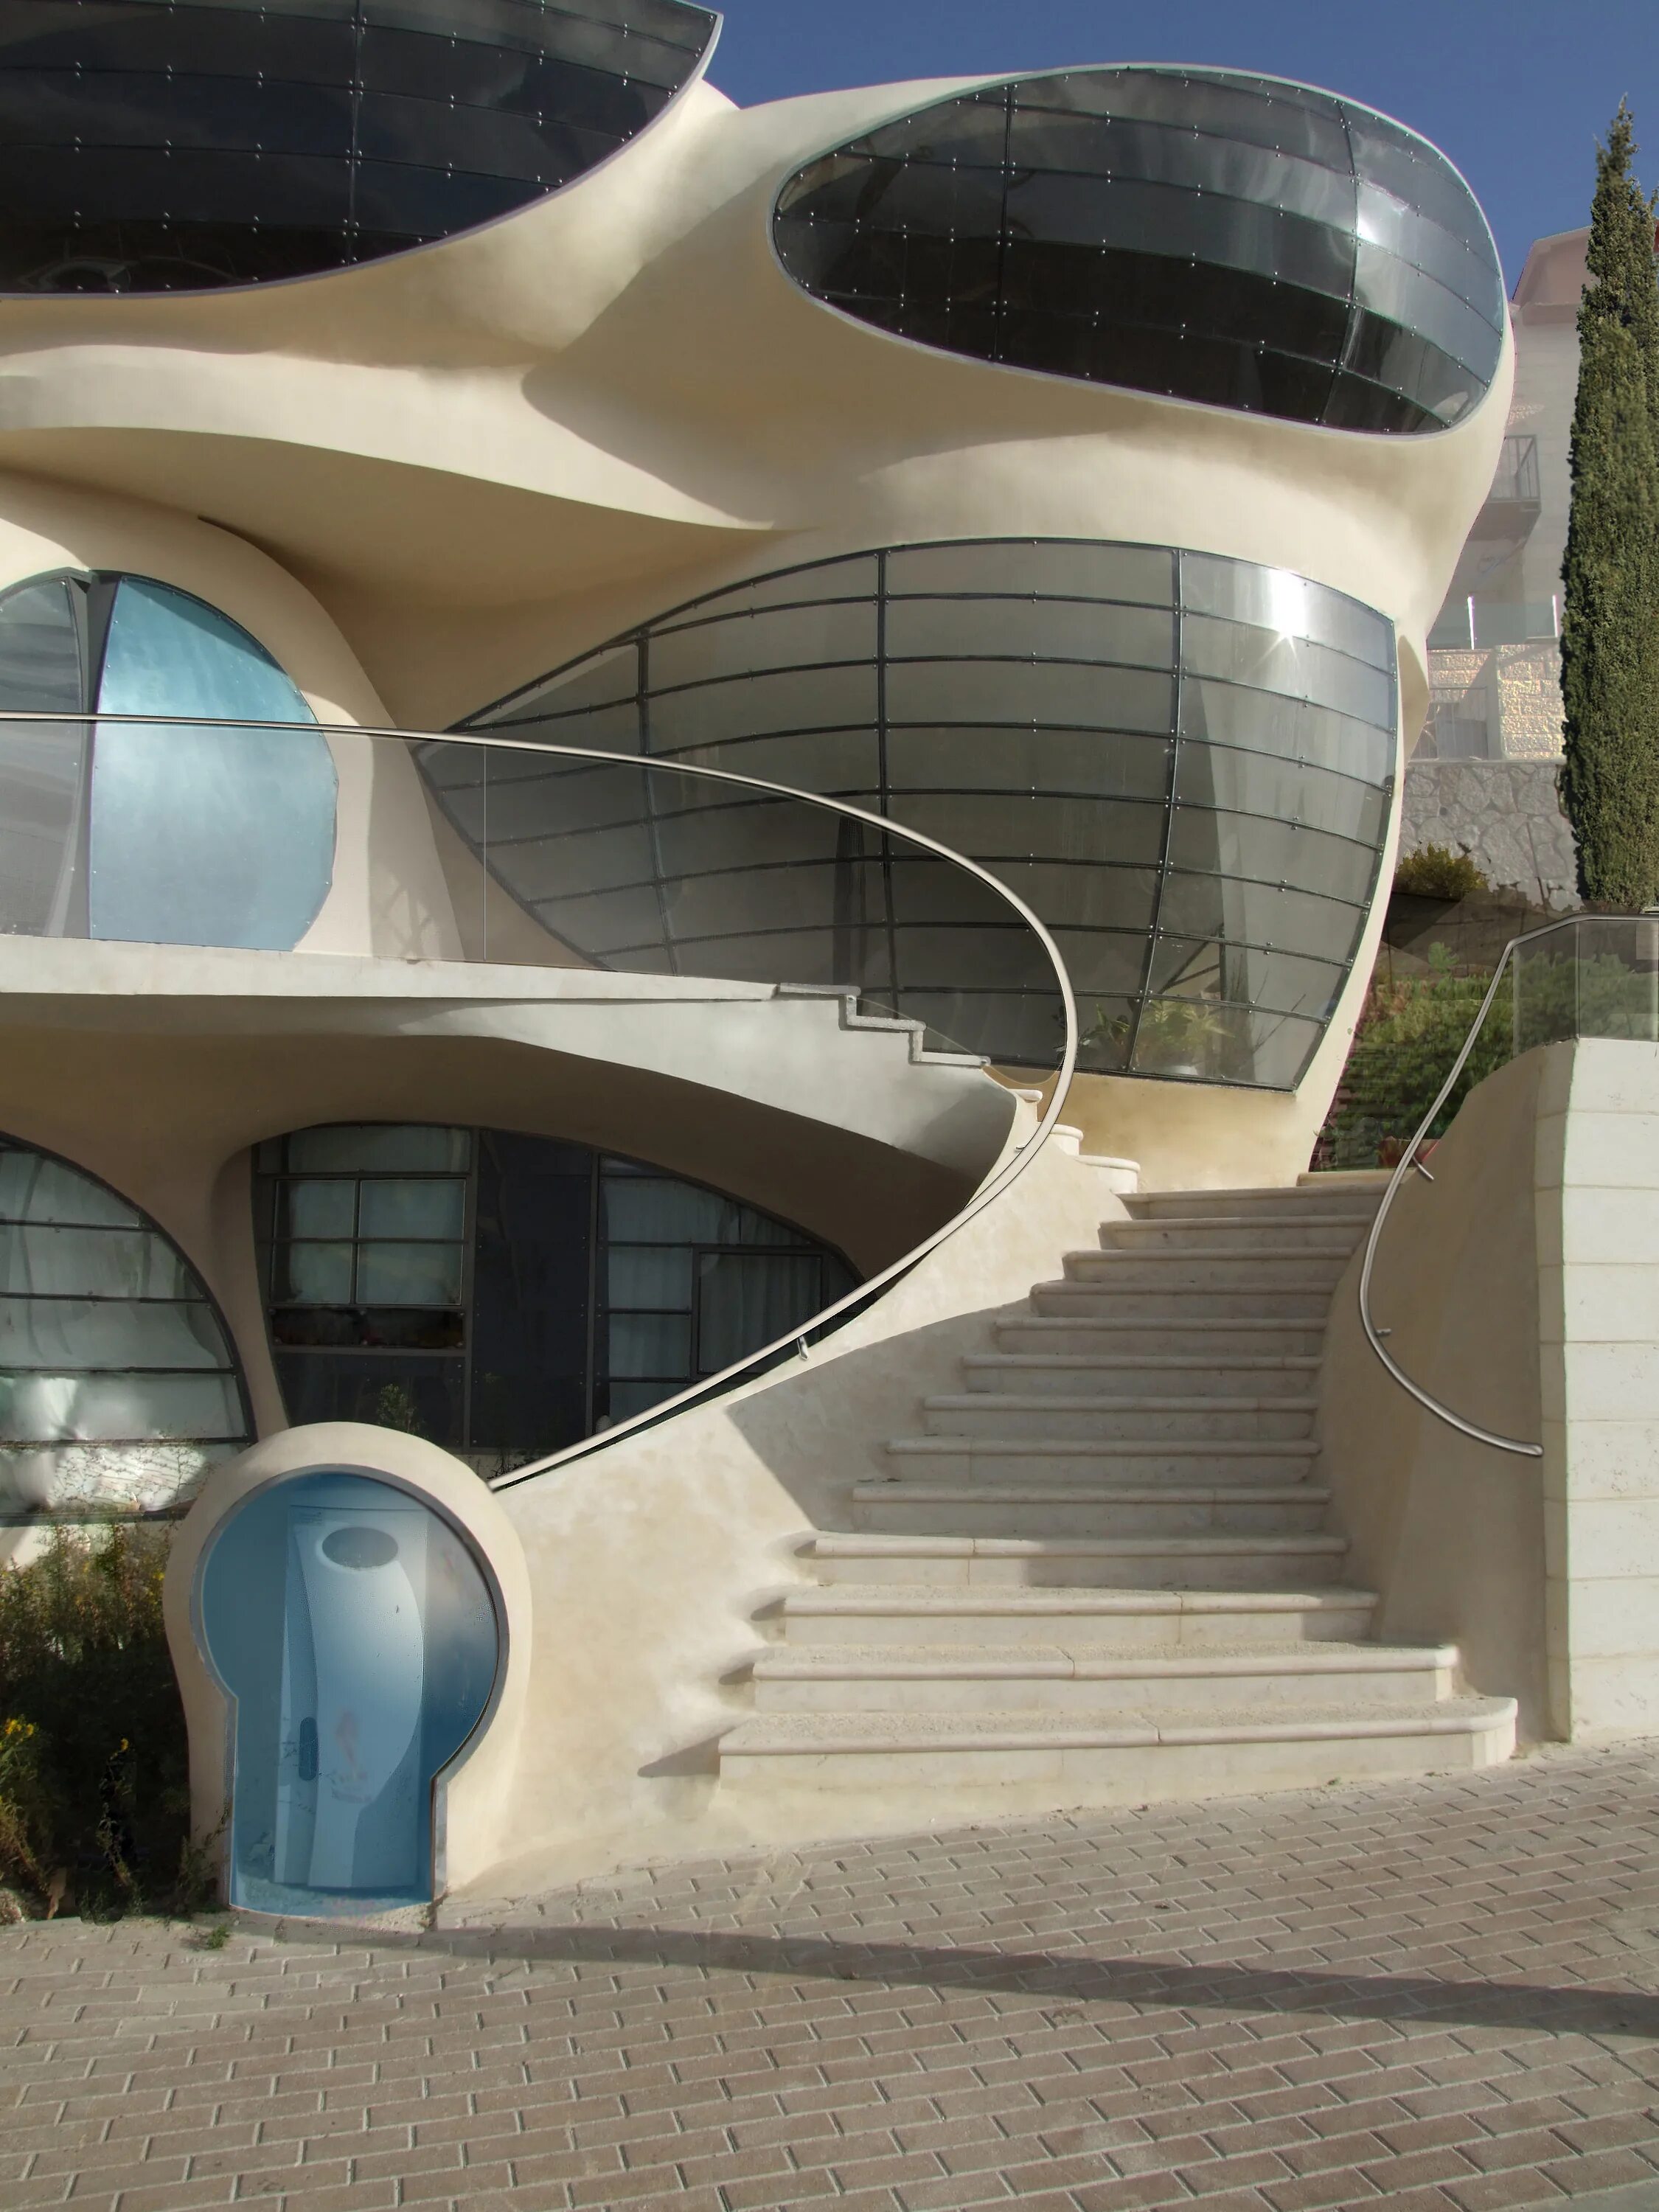 Здание biomorphic House 2012 в Израиле. Органическая архитектура МОНОСОТА. Стиль Бионика в архитектуре.